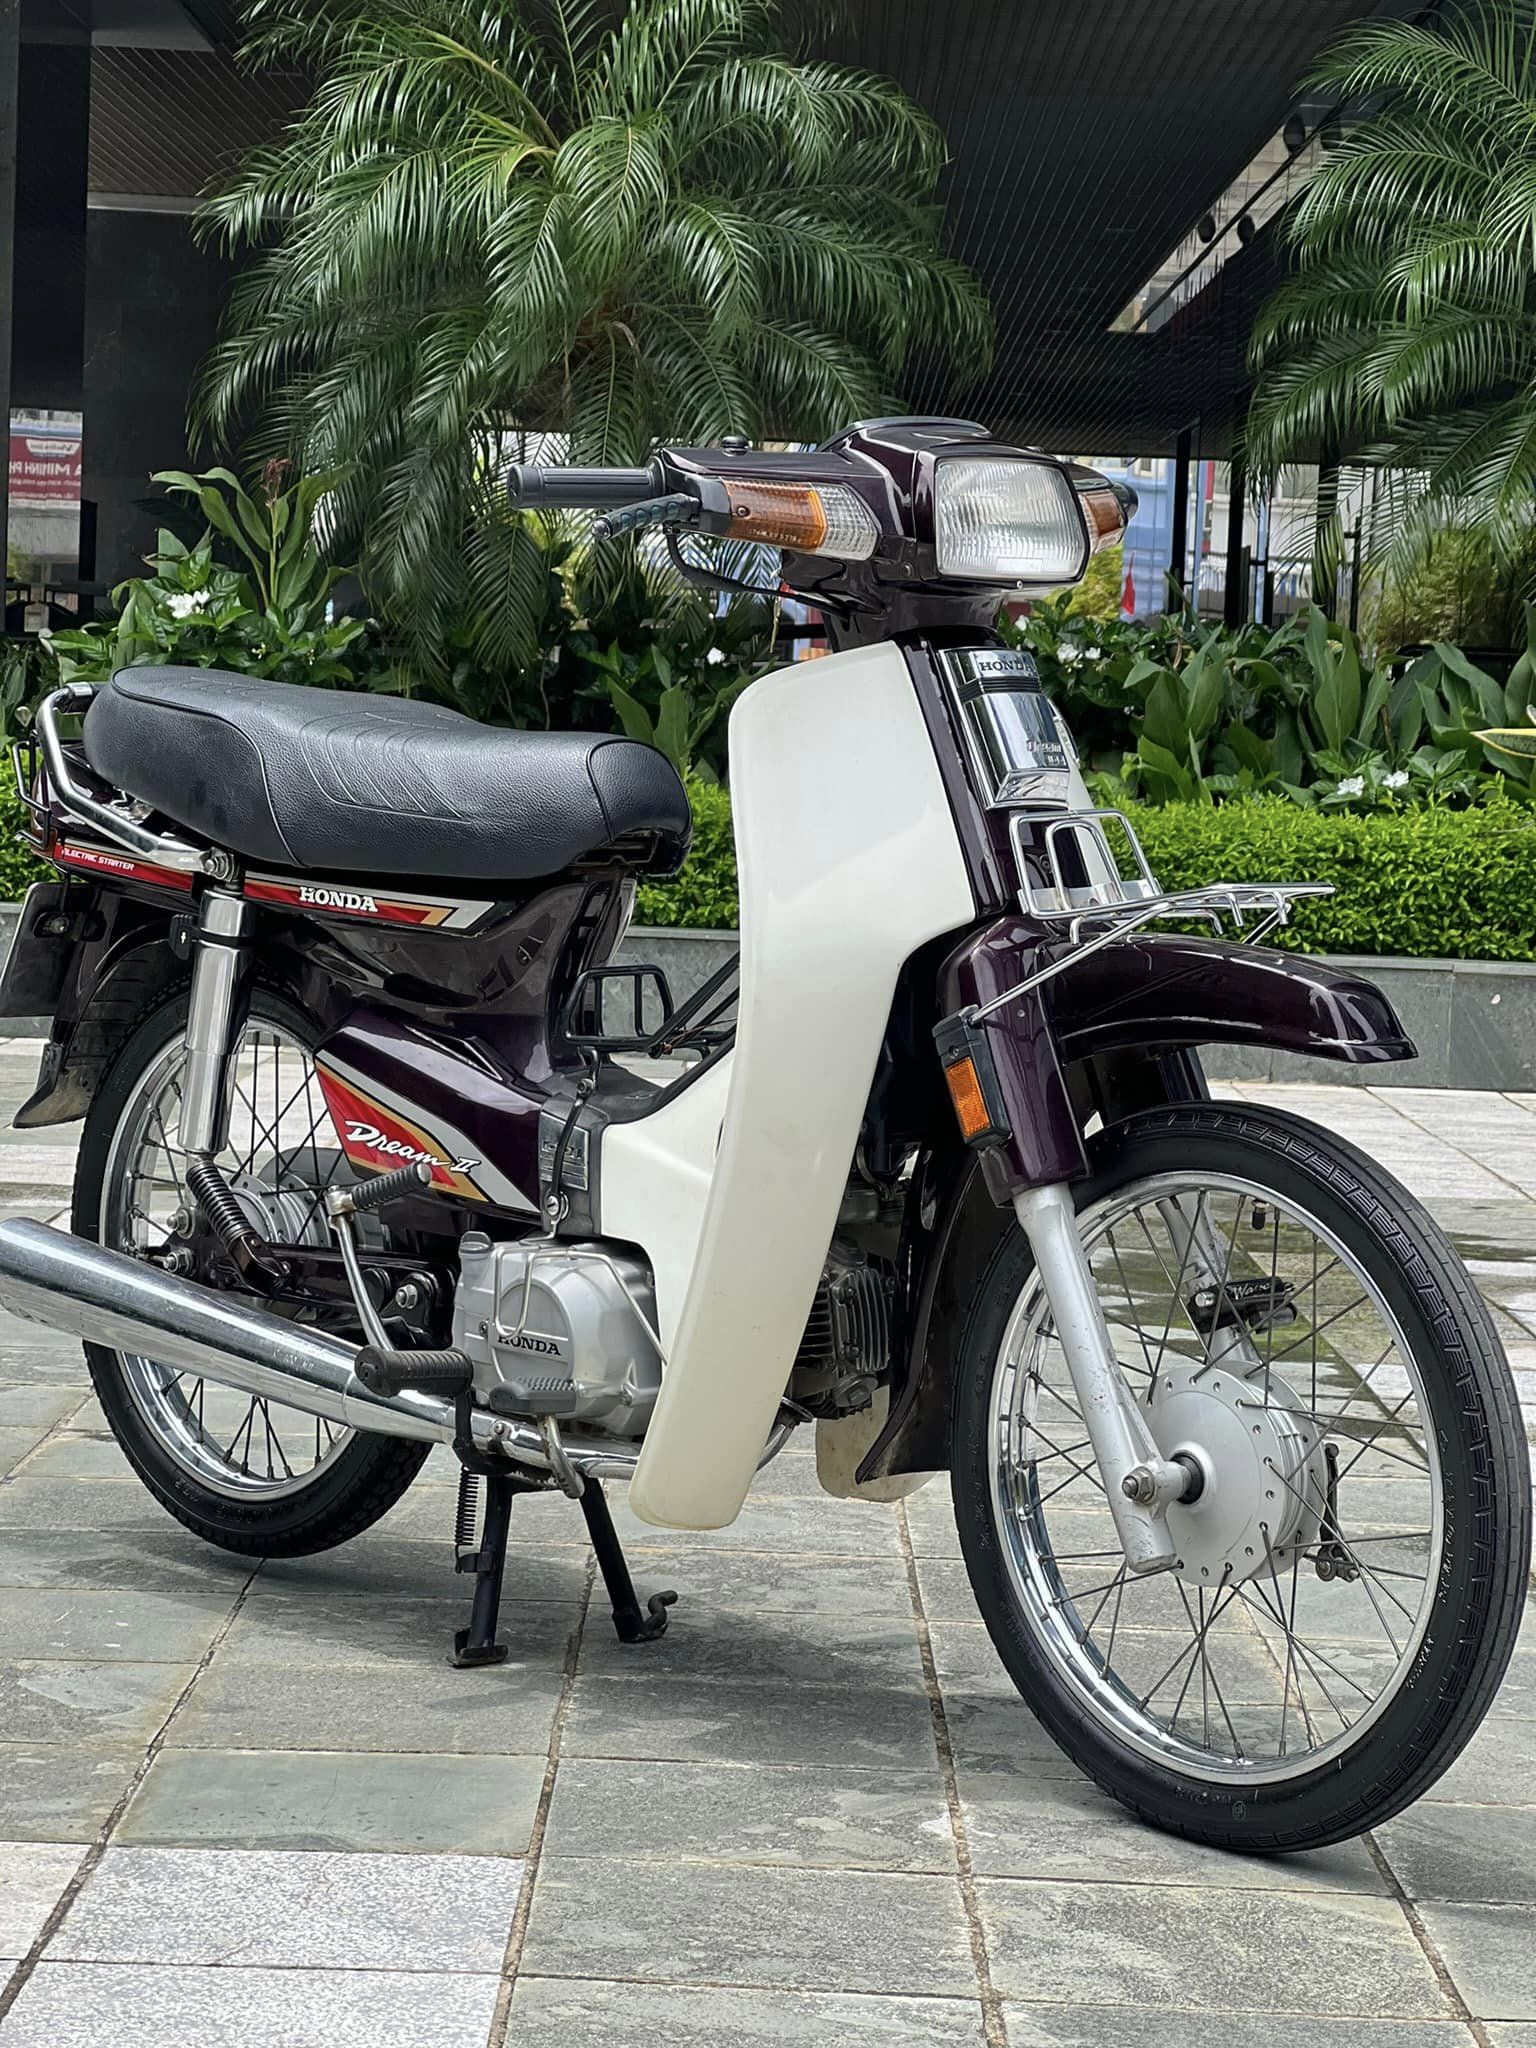 Mua xe Dream cũ cần chú ý điều gì Top 3 địa chỉ mua Dream cũ tại Hà nội  Hồ Chí Minh